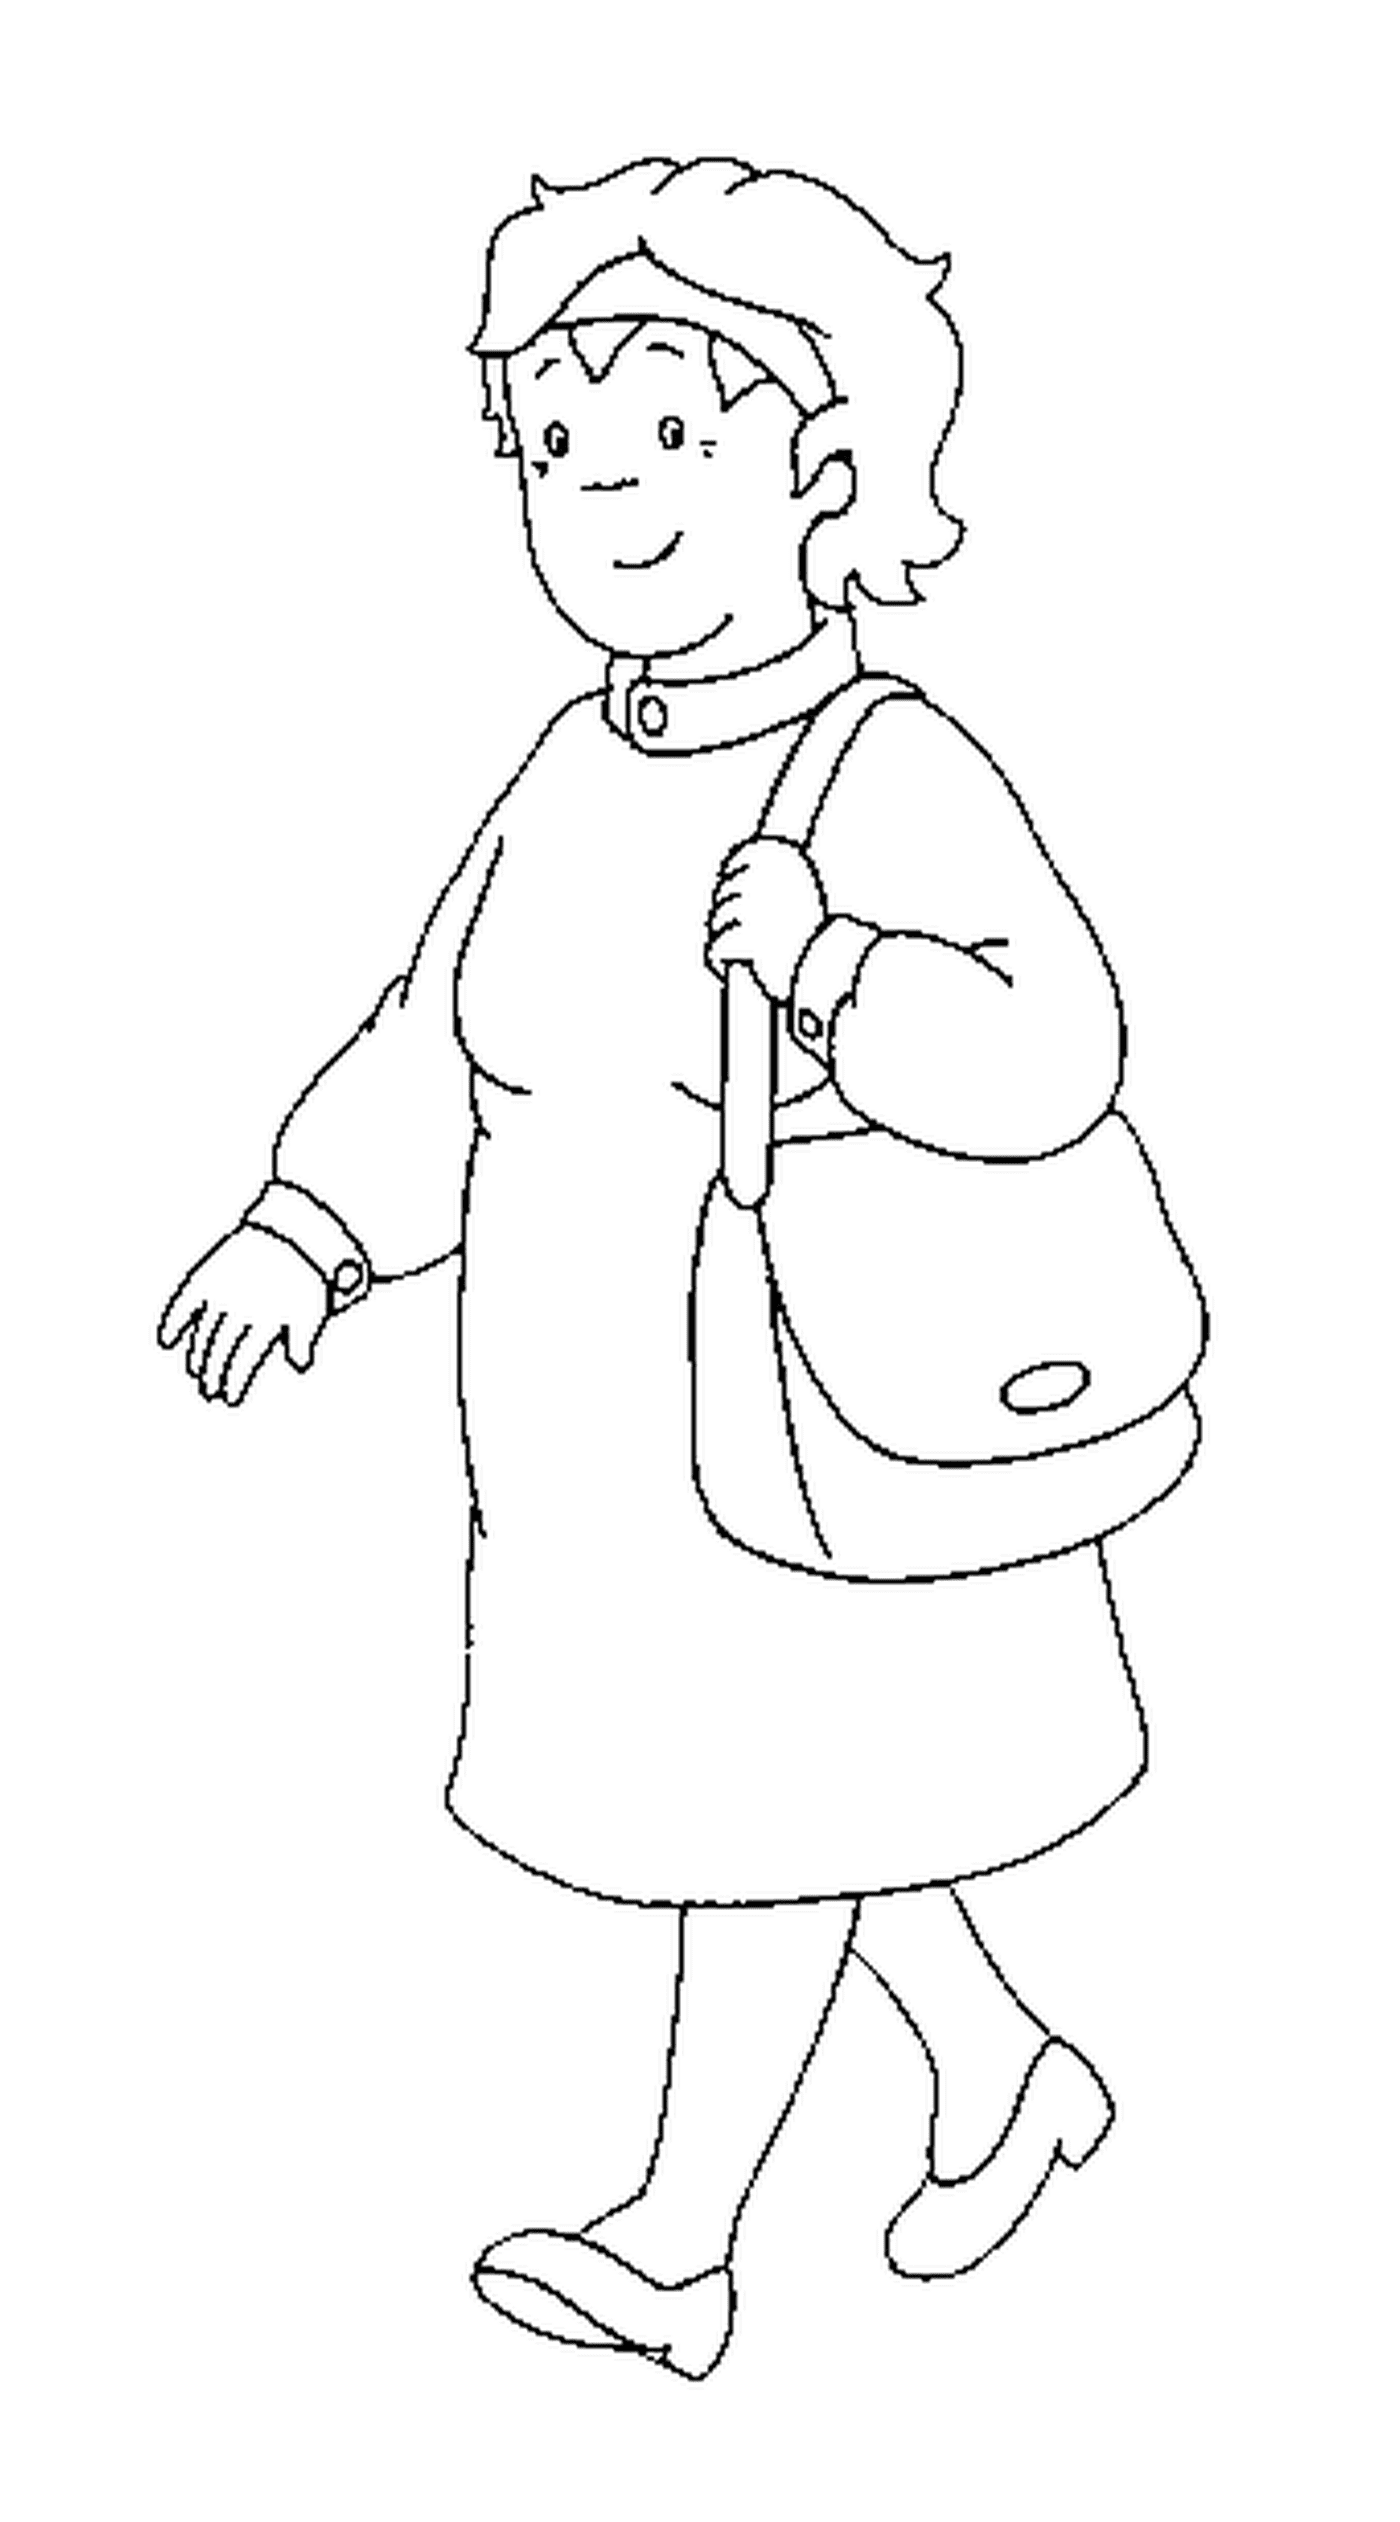  A avó de Caillou com uma bolsa 